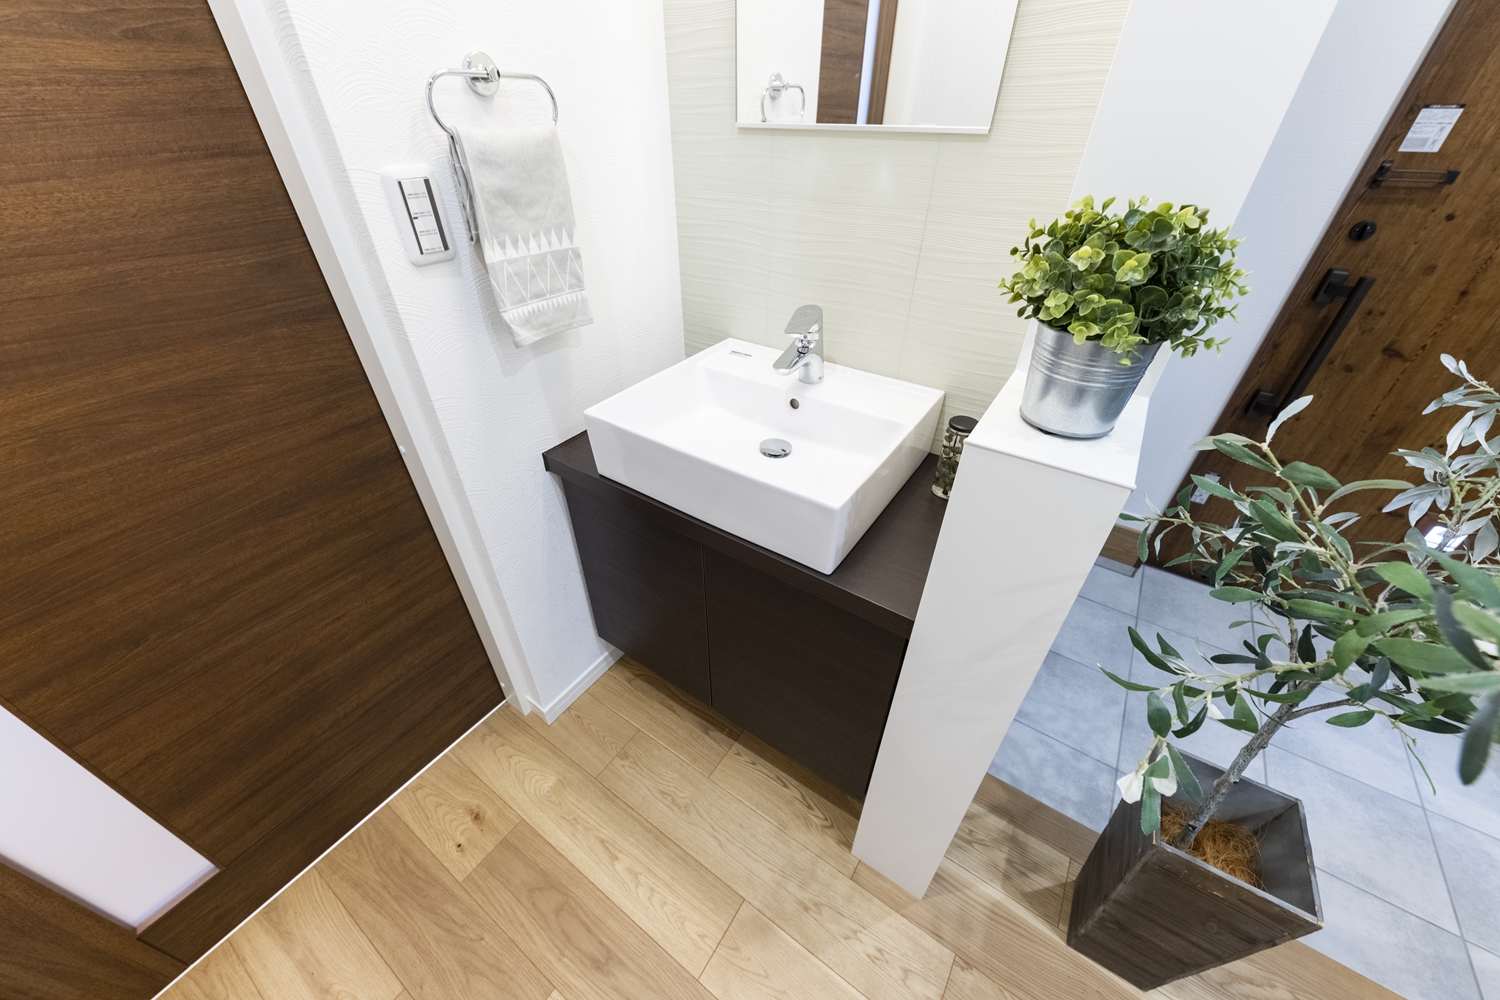 お客様も使いやすい玄関横の手洗いコーナー。帰宅してすぐうがいや手洗いができるので、衛生的で快適です。